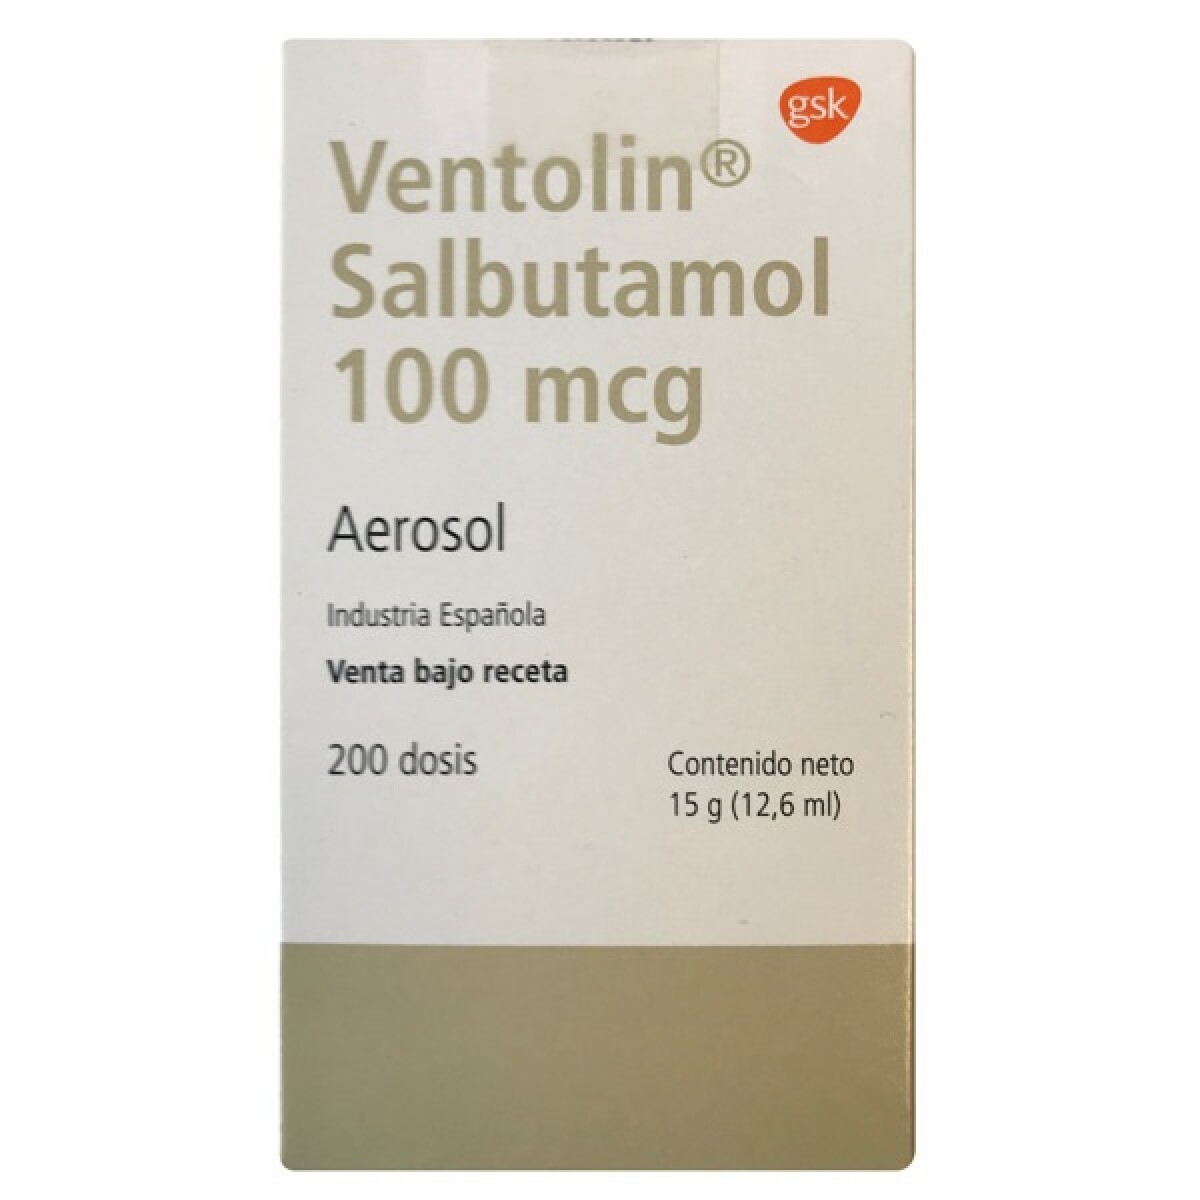 Ventolin Osp Inhalador 200 Dosis 